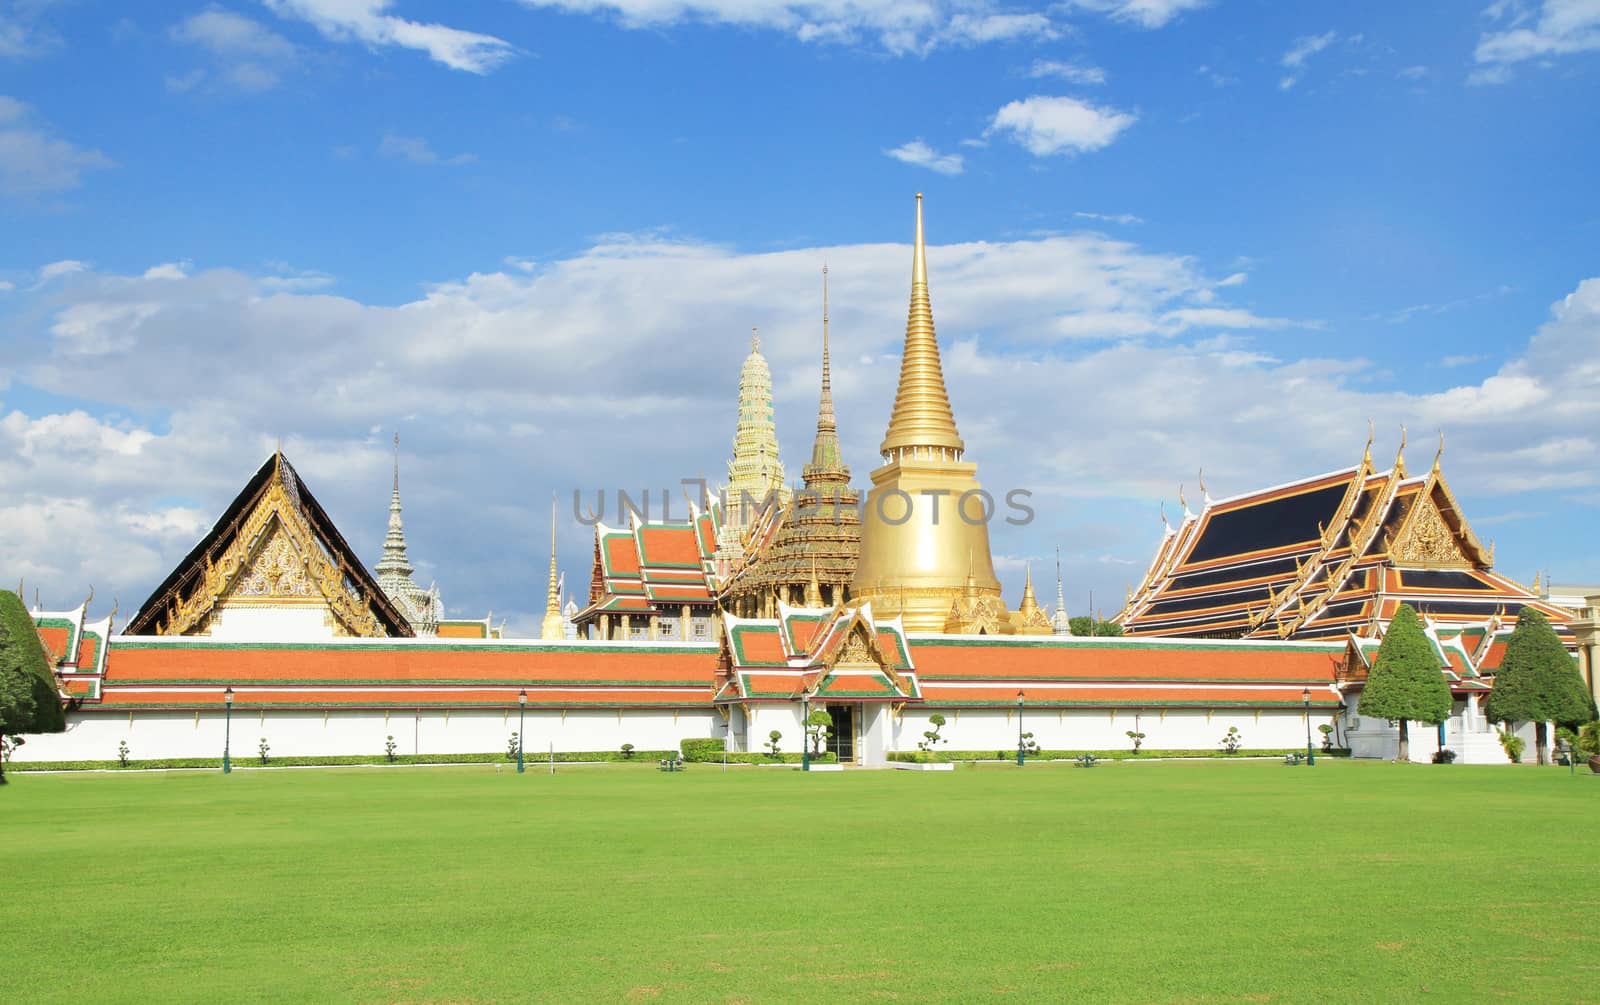 Grand palace in Bangkok, Thailand. by drpnncpp